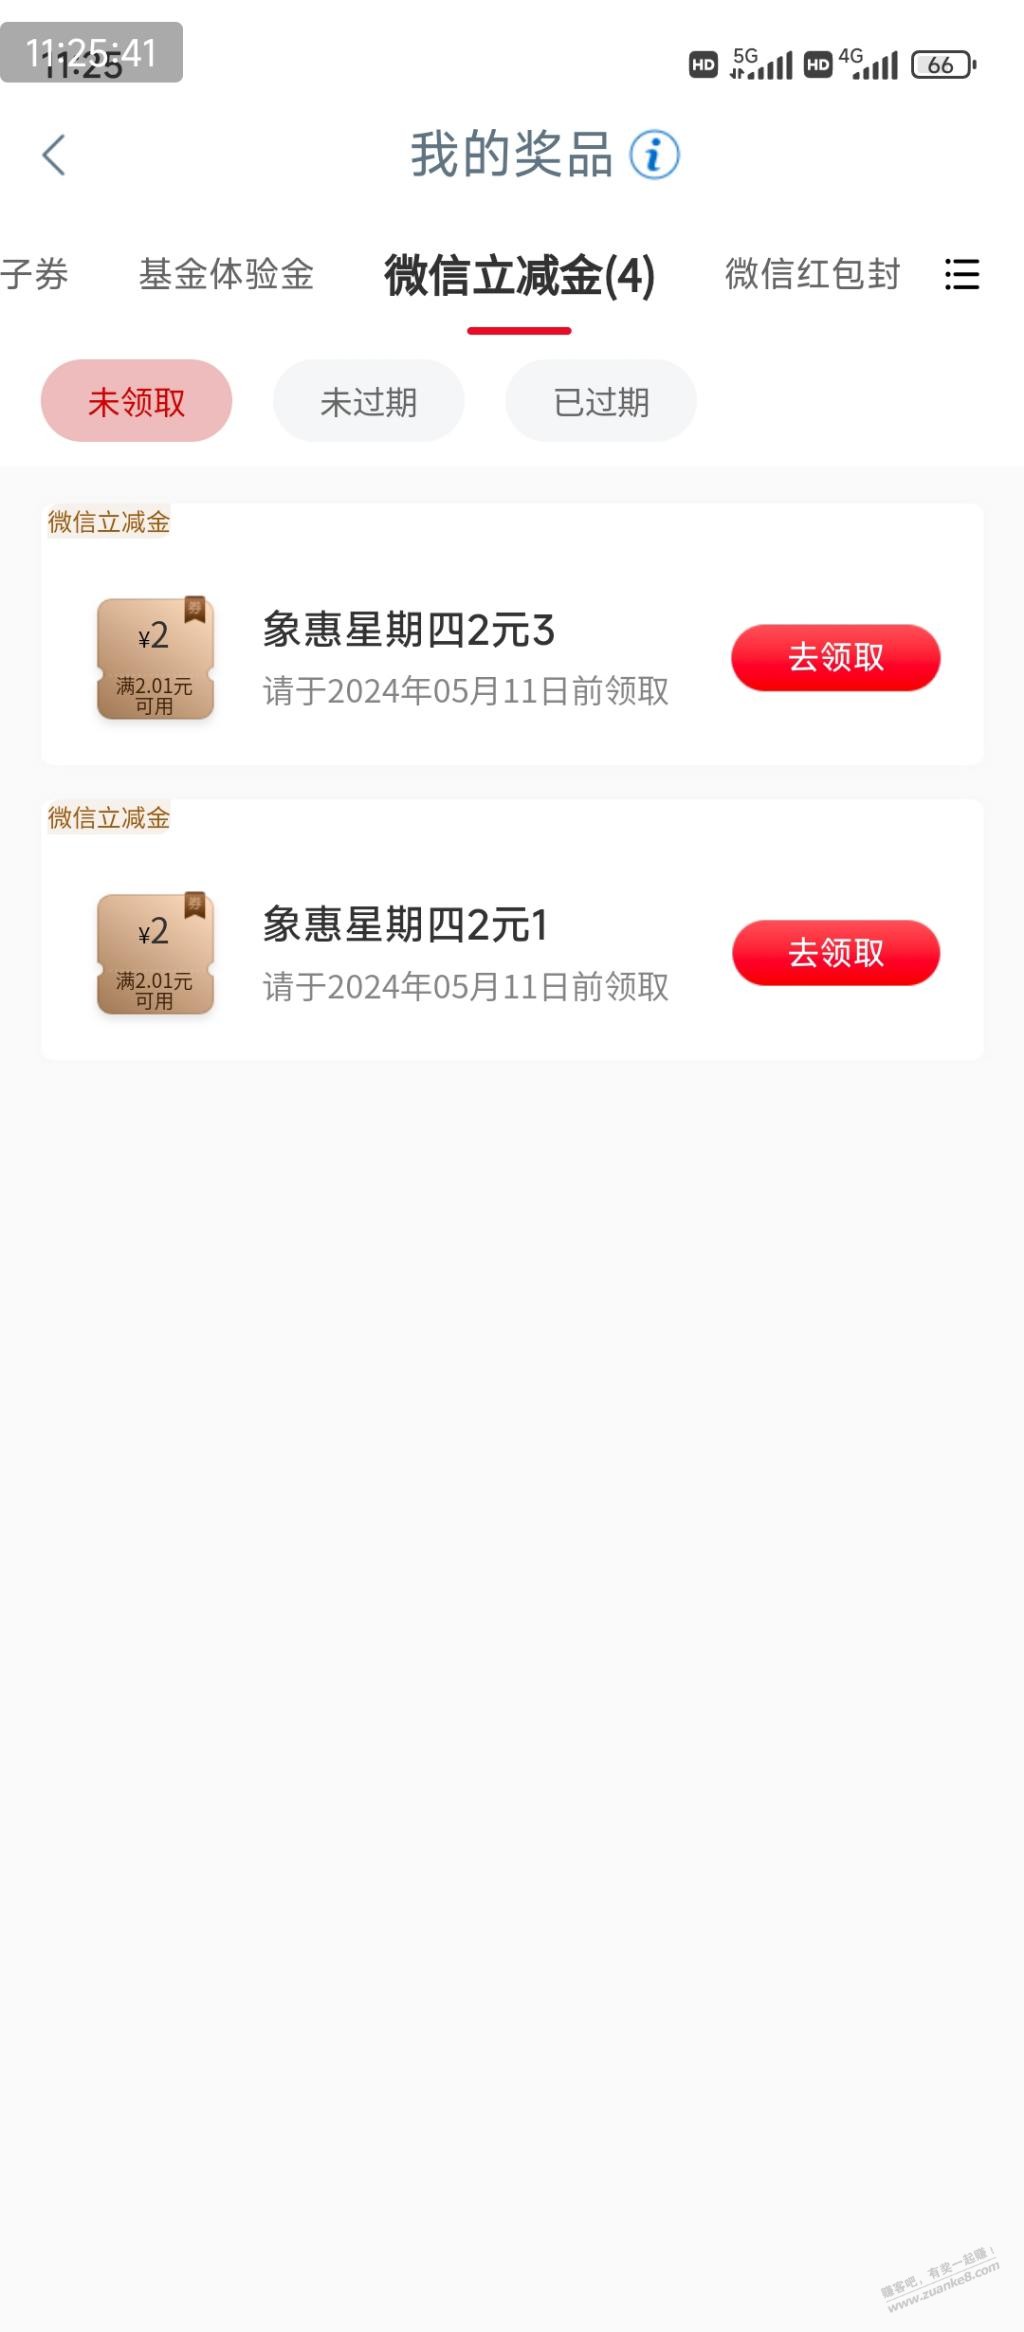 工行 周四 可能有水-惠小助(52huixz.com)